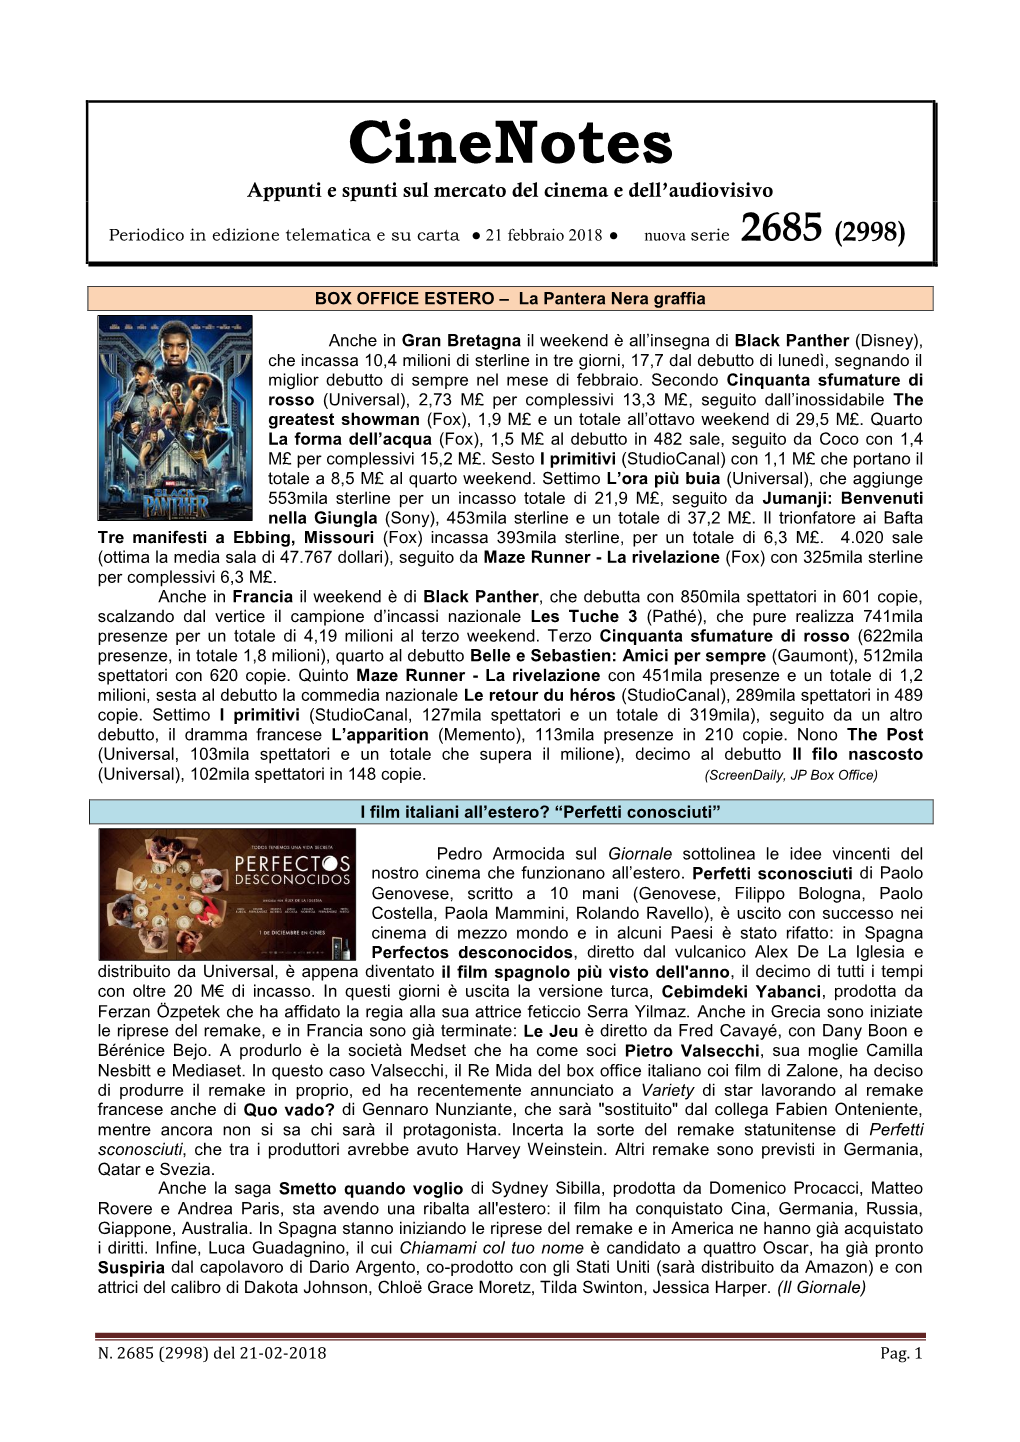 Cinenotes Appunti E Spunti Sul Mercato Del Cinema E Dell’Audiovisivo